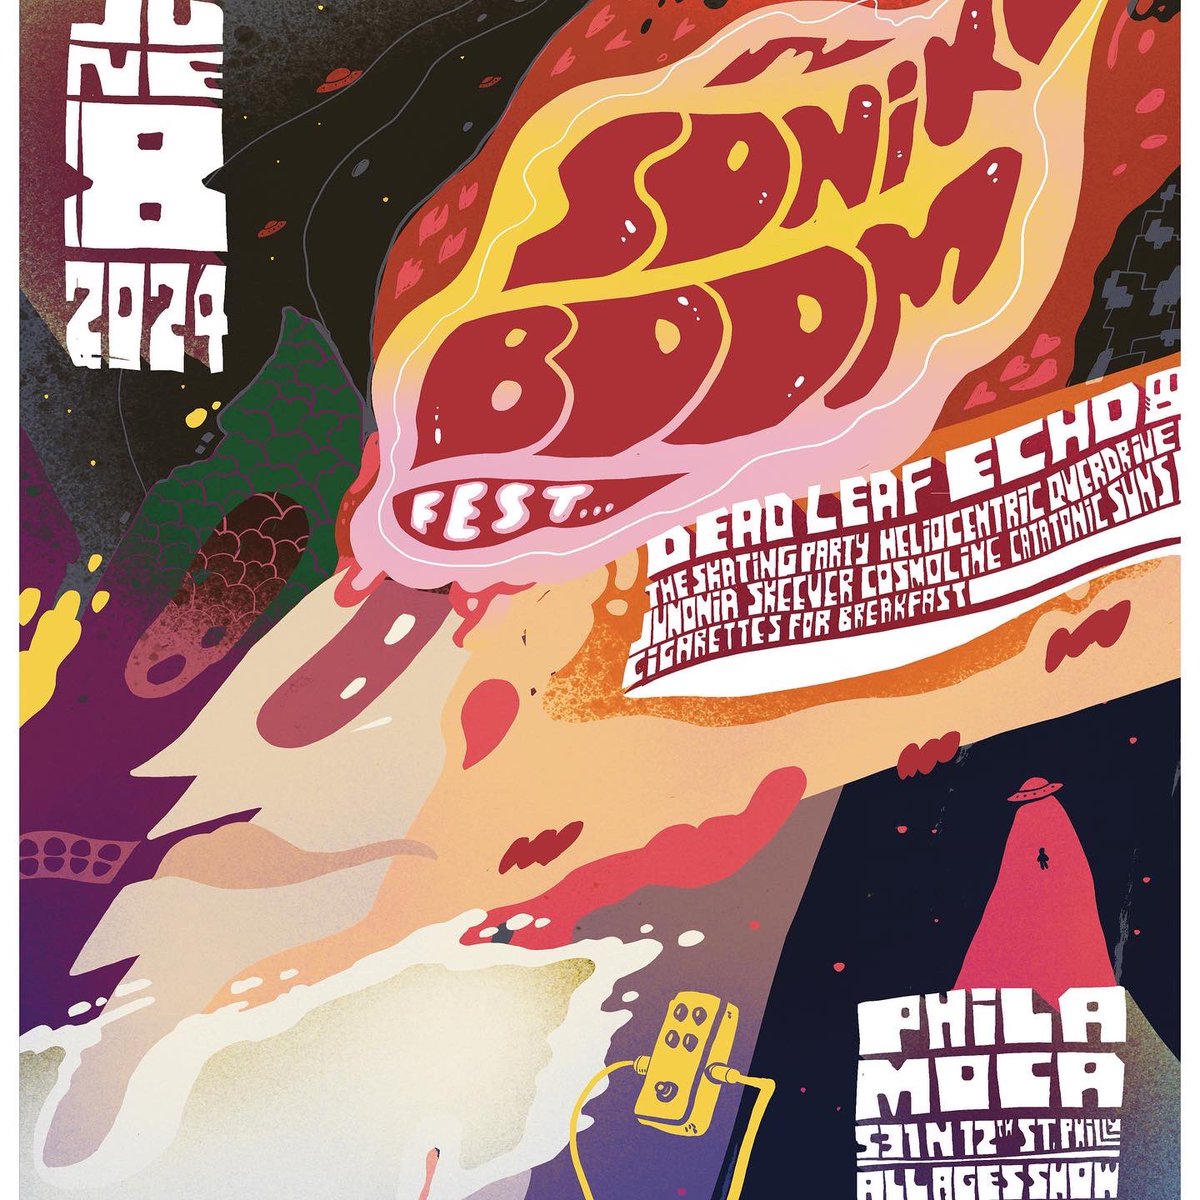 Sonik Boom Fest I Philadelphia June 8th at @PhilaMOCA eventbrite.com/e/sonik-boom-f…